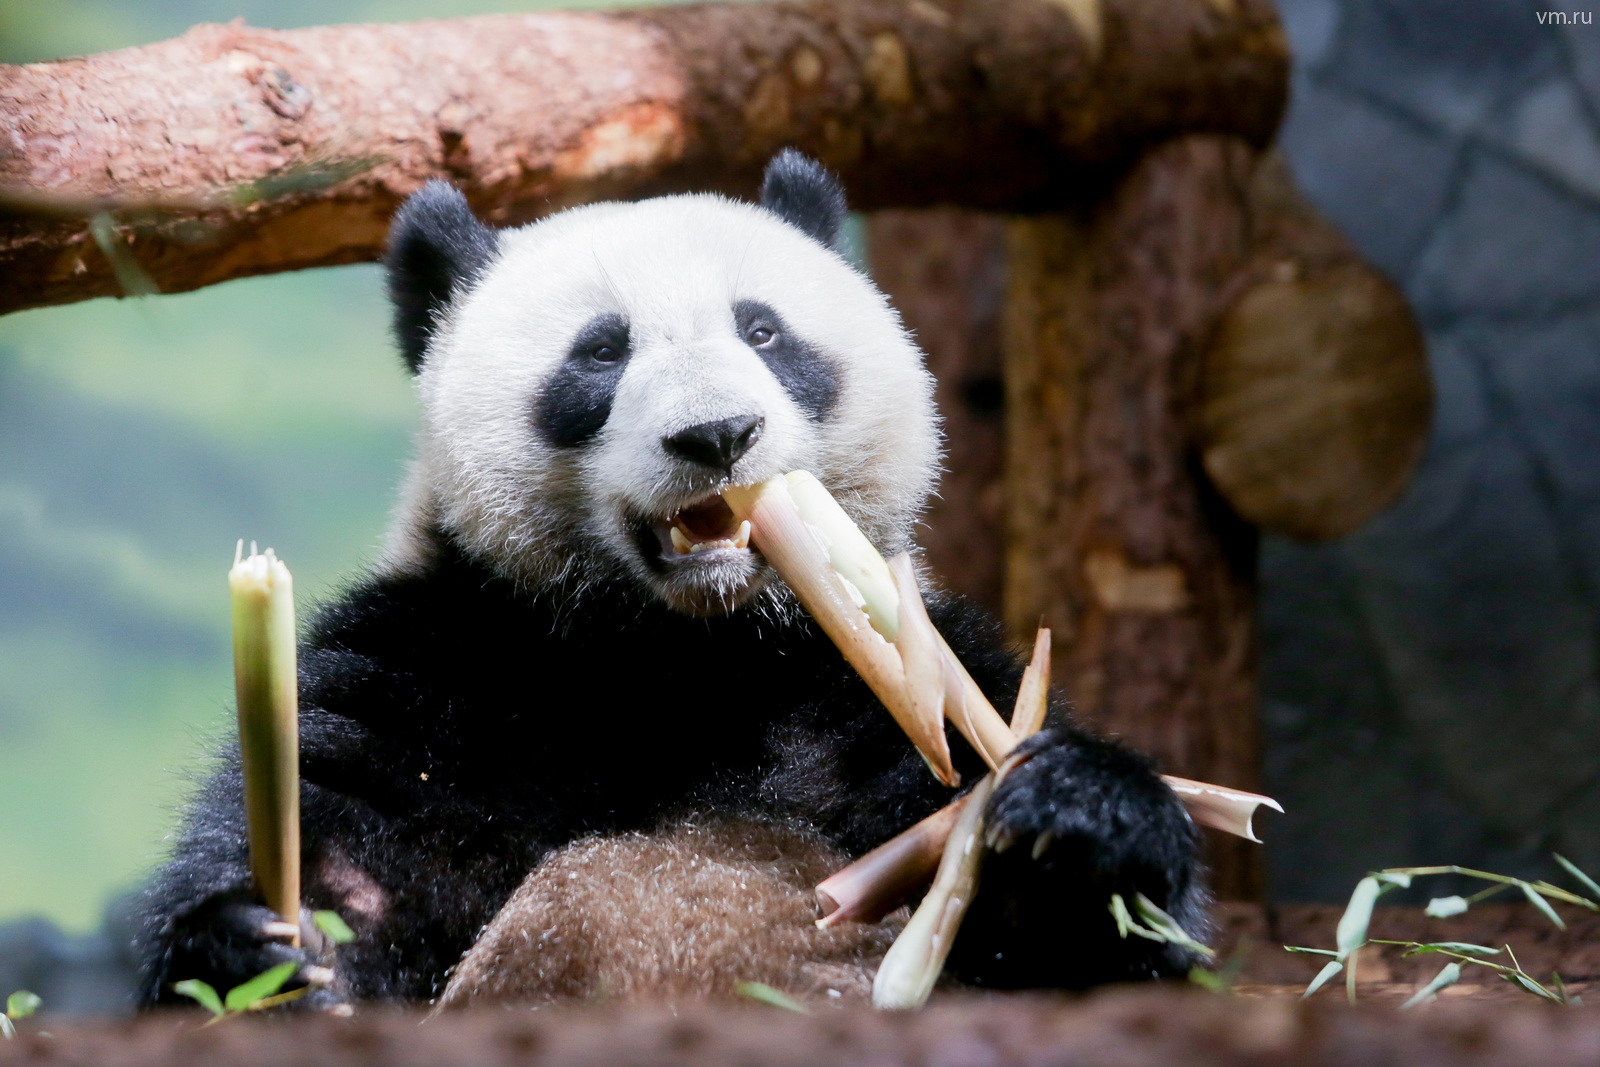 Московский зоопарк установит новые камеры для наблюдения за пандами